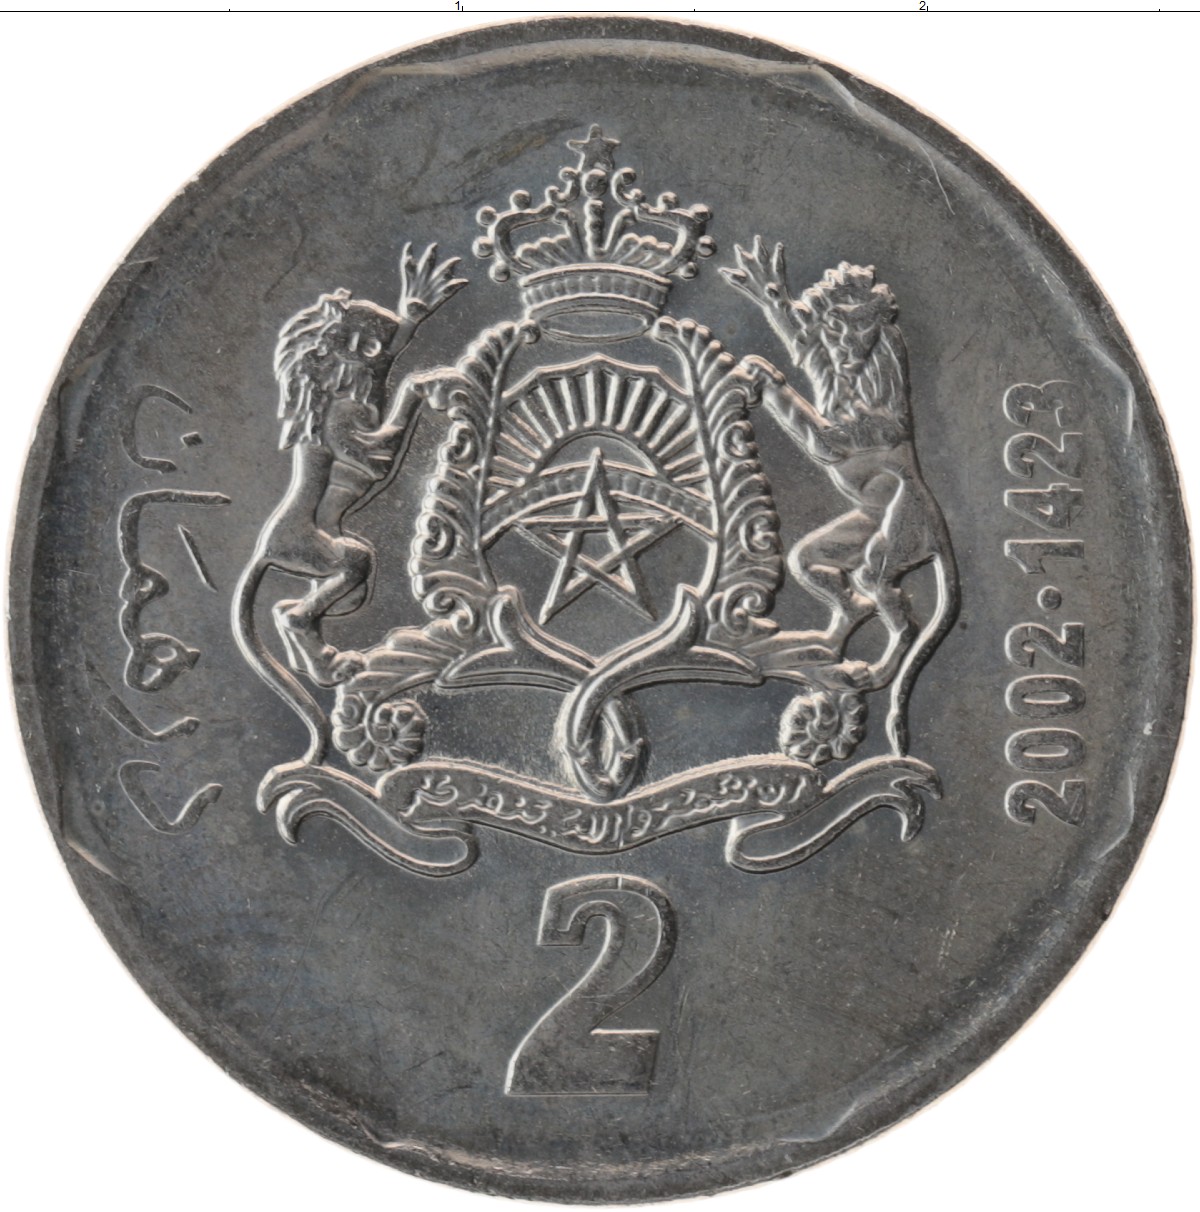 150 000 дирхам. 1/2 Дирхама 2002. 2 Дирхама монета. Монета Марокко 1/2 дирхама 2002. Монета 2 дирхама Марокко 2002 года.